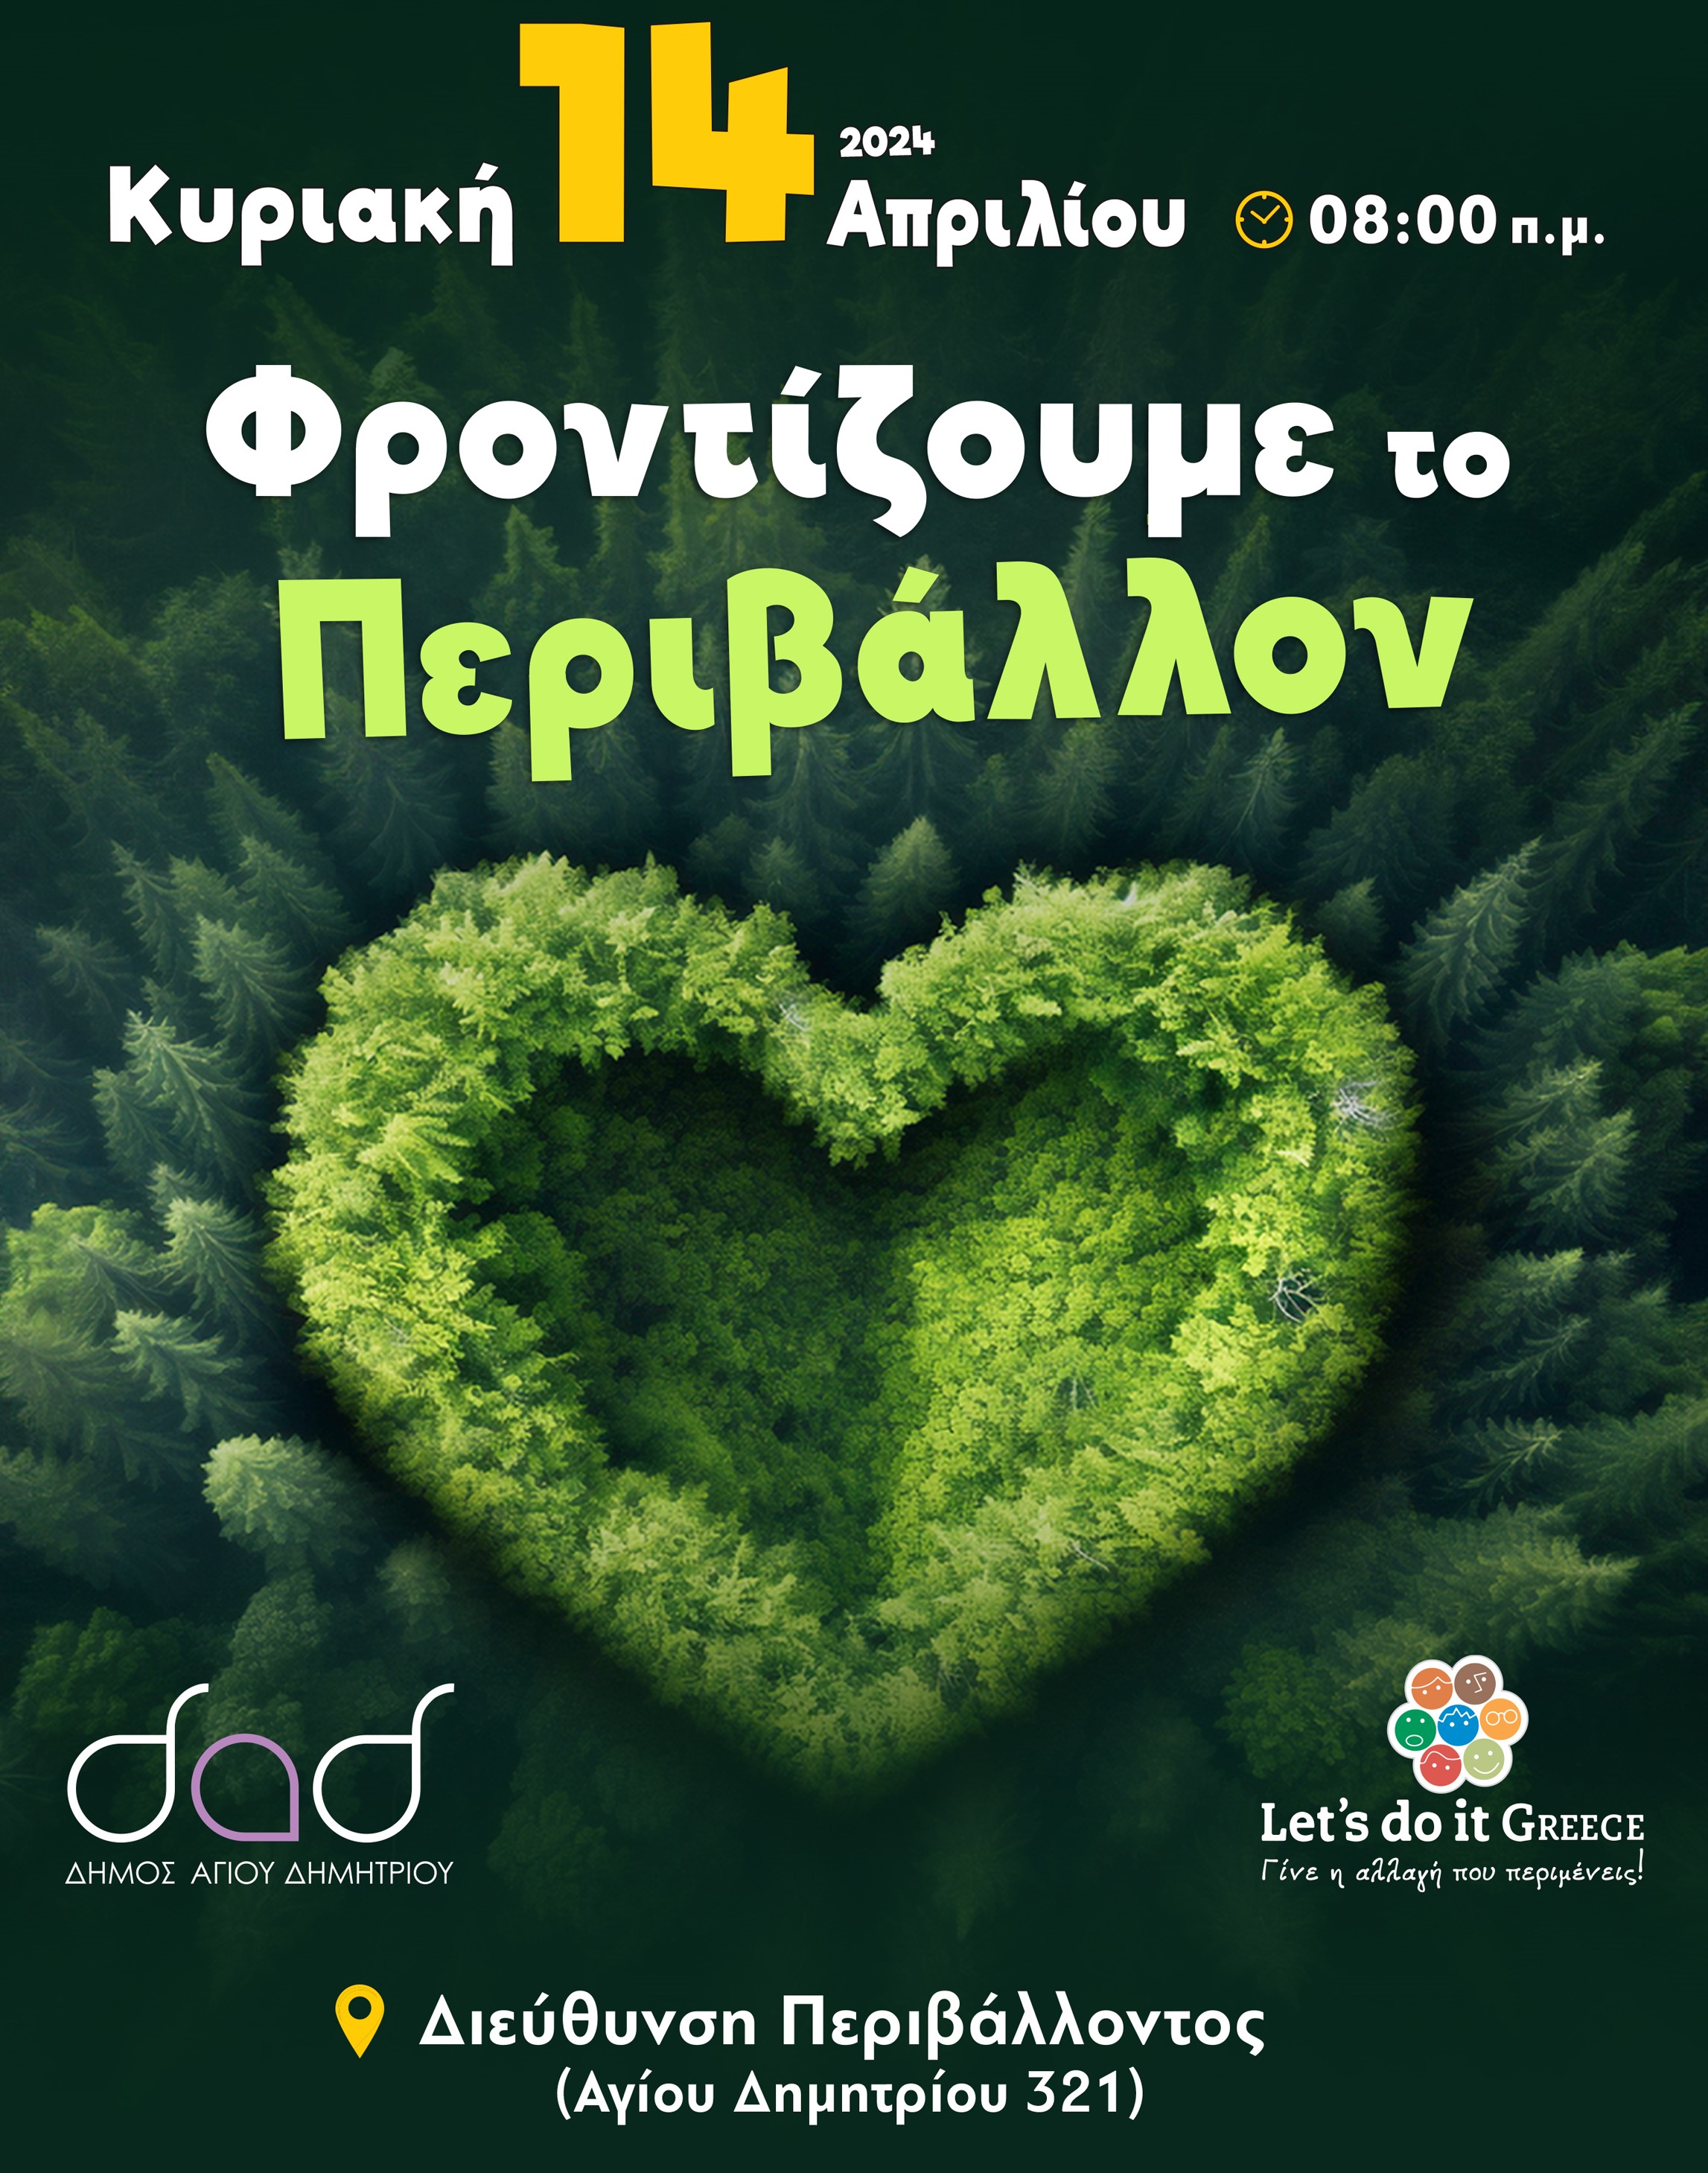 Εθελοντική δράση καθαρισμού στον Δήμο Αγίου Δημητρίου, την Κυριακή 14 Απριλίου, στο πλαίσιο του Let's do it Greece 2024